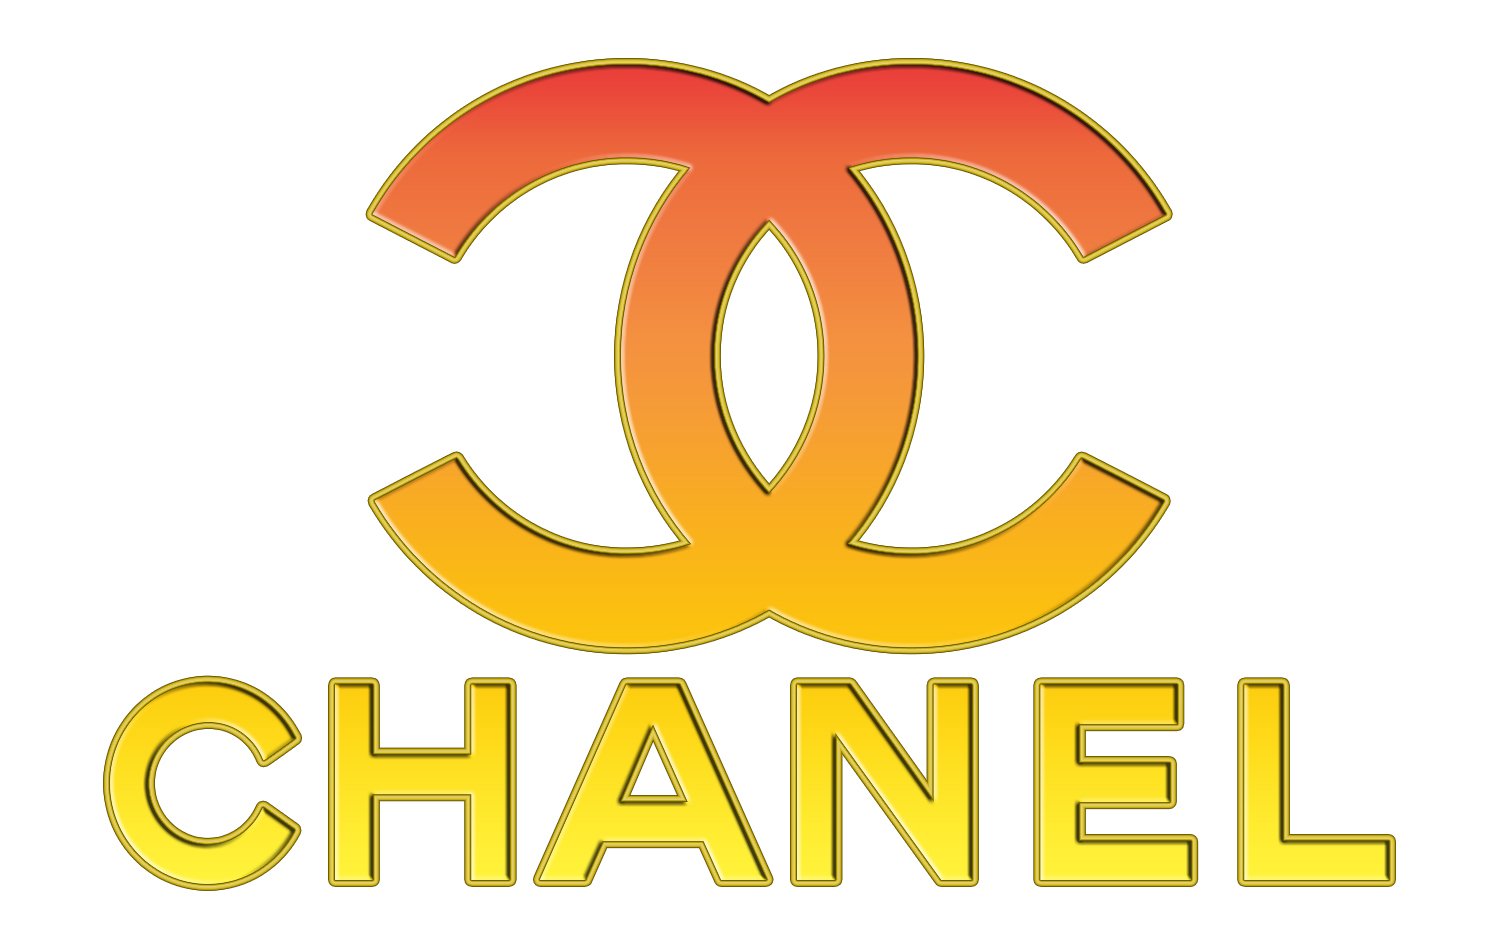 Il logo Chanel: l'origine, il design e il significato dietro uno